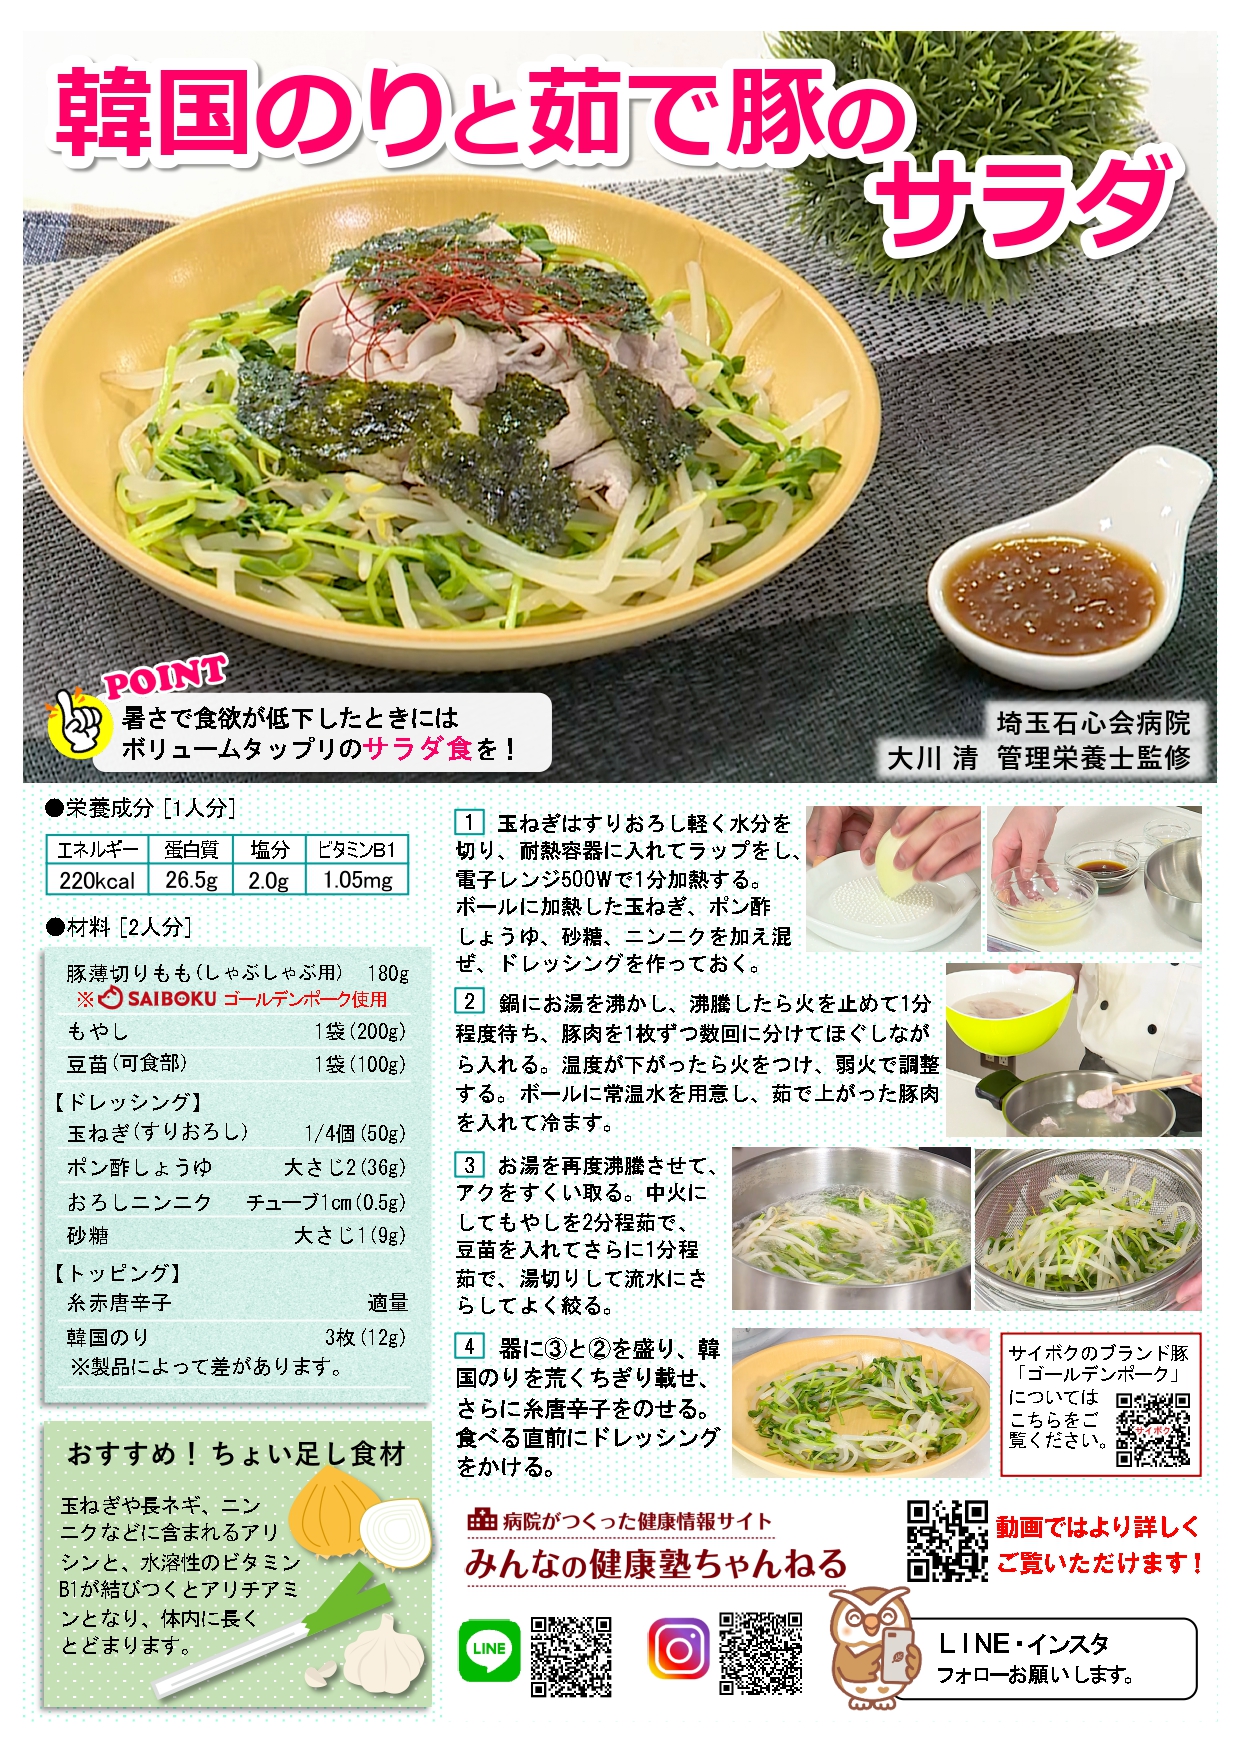 Vol.79_韓国のりと茹で豚のサラダ_page-0001.jpg